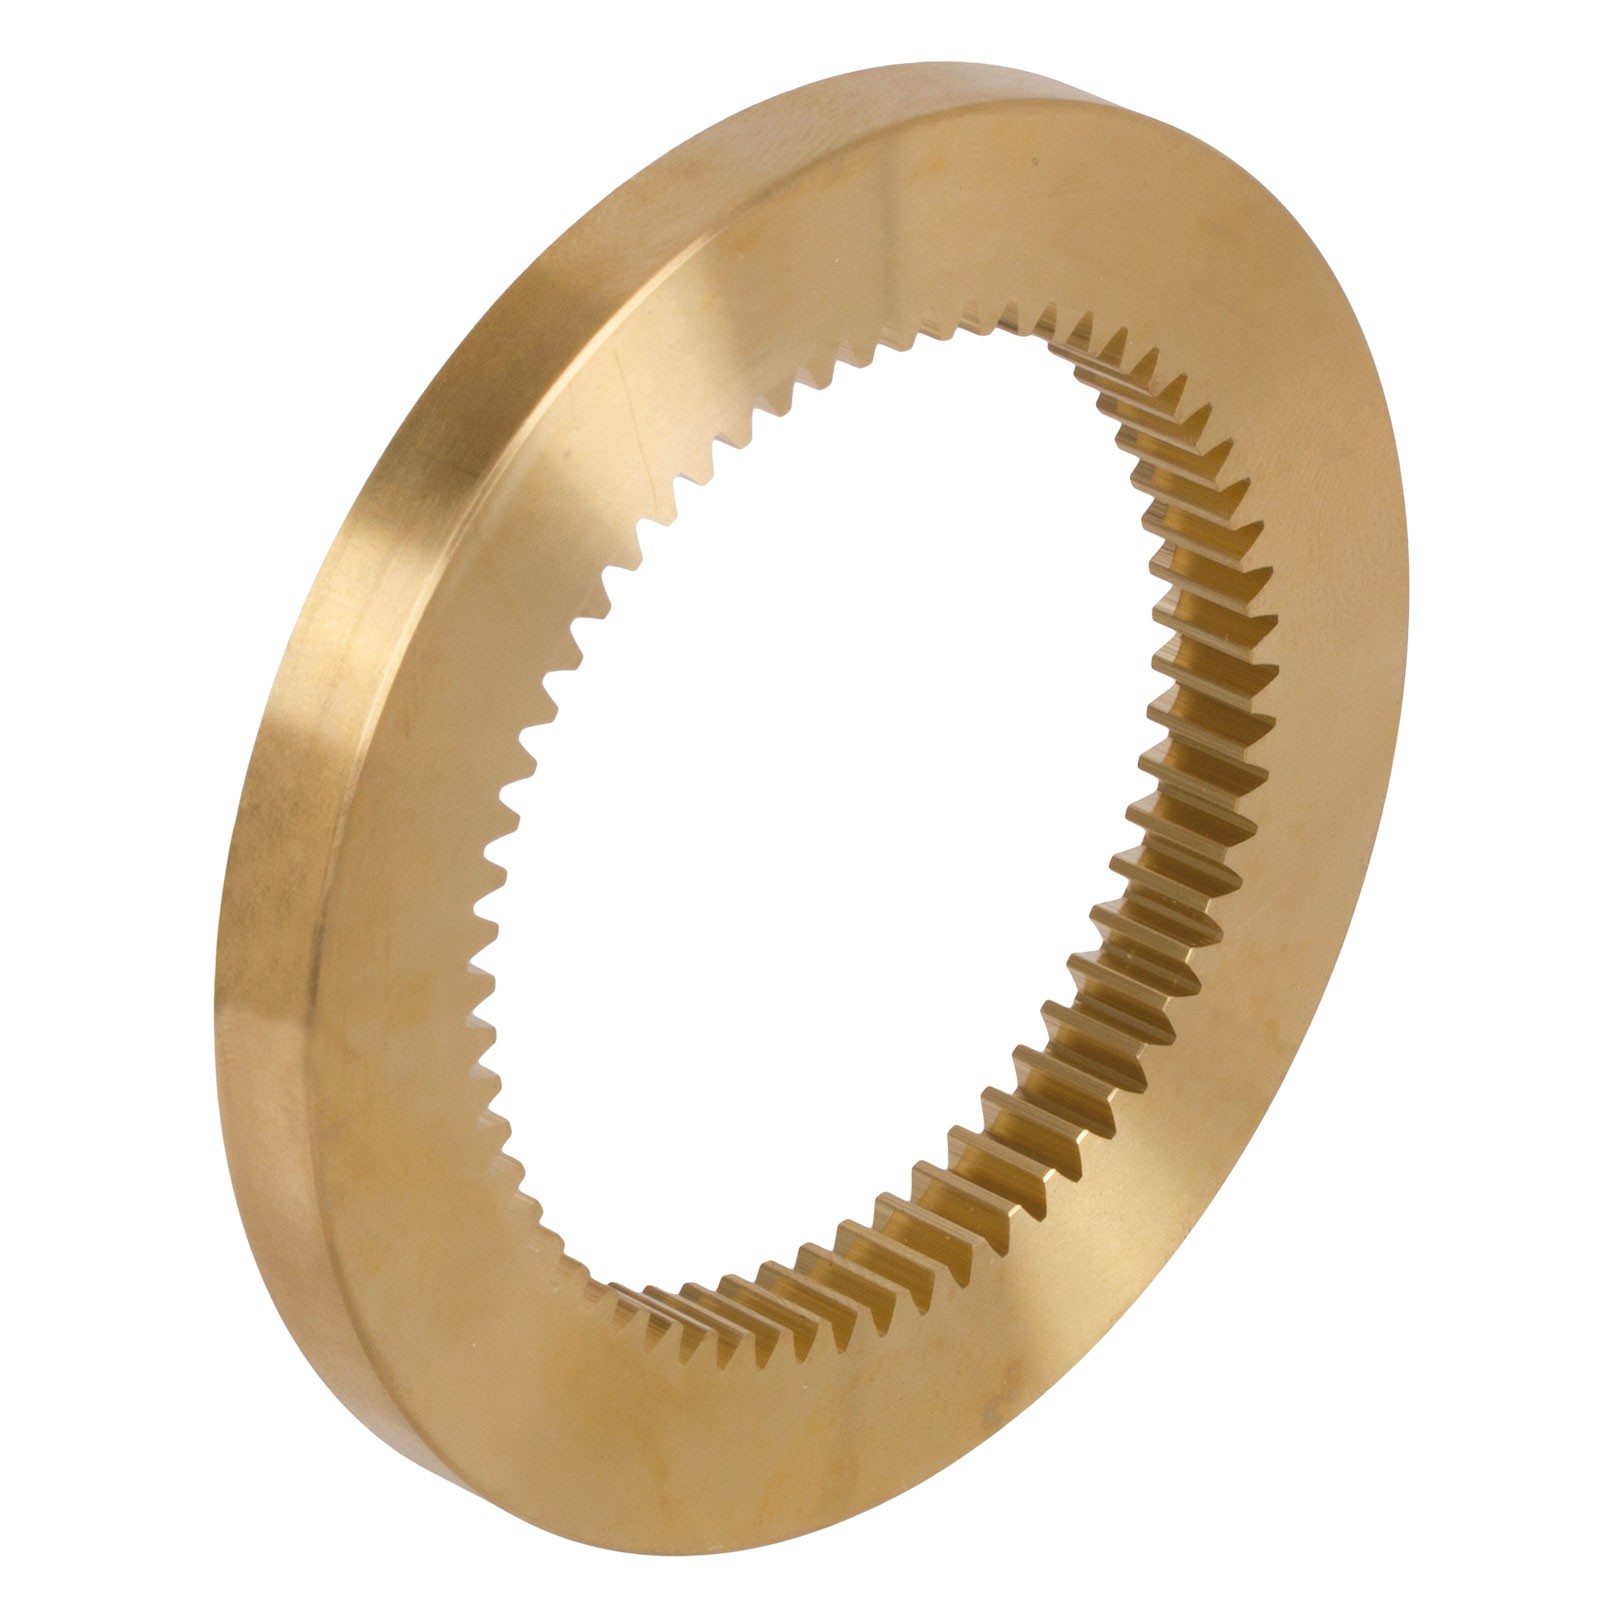 Made from Brass Ms58,20 Teeth 4mm Teeth Width Spur Gear Gear Module 0,5 